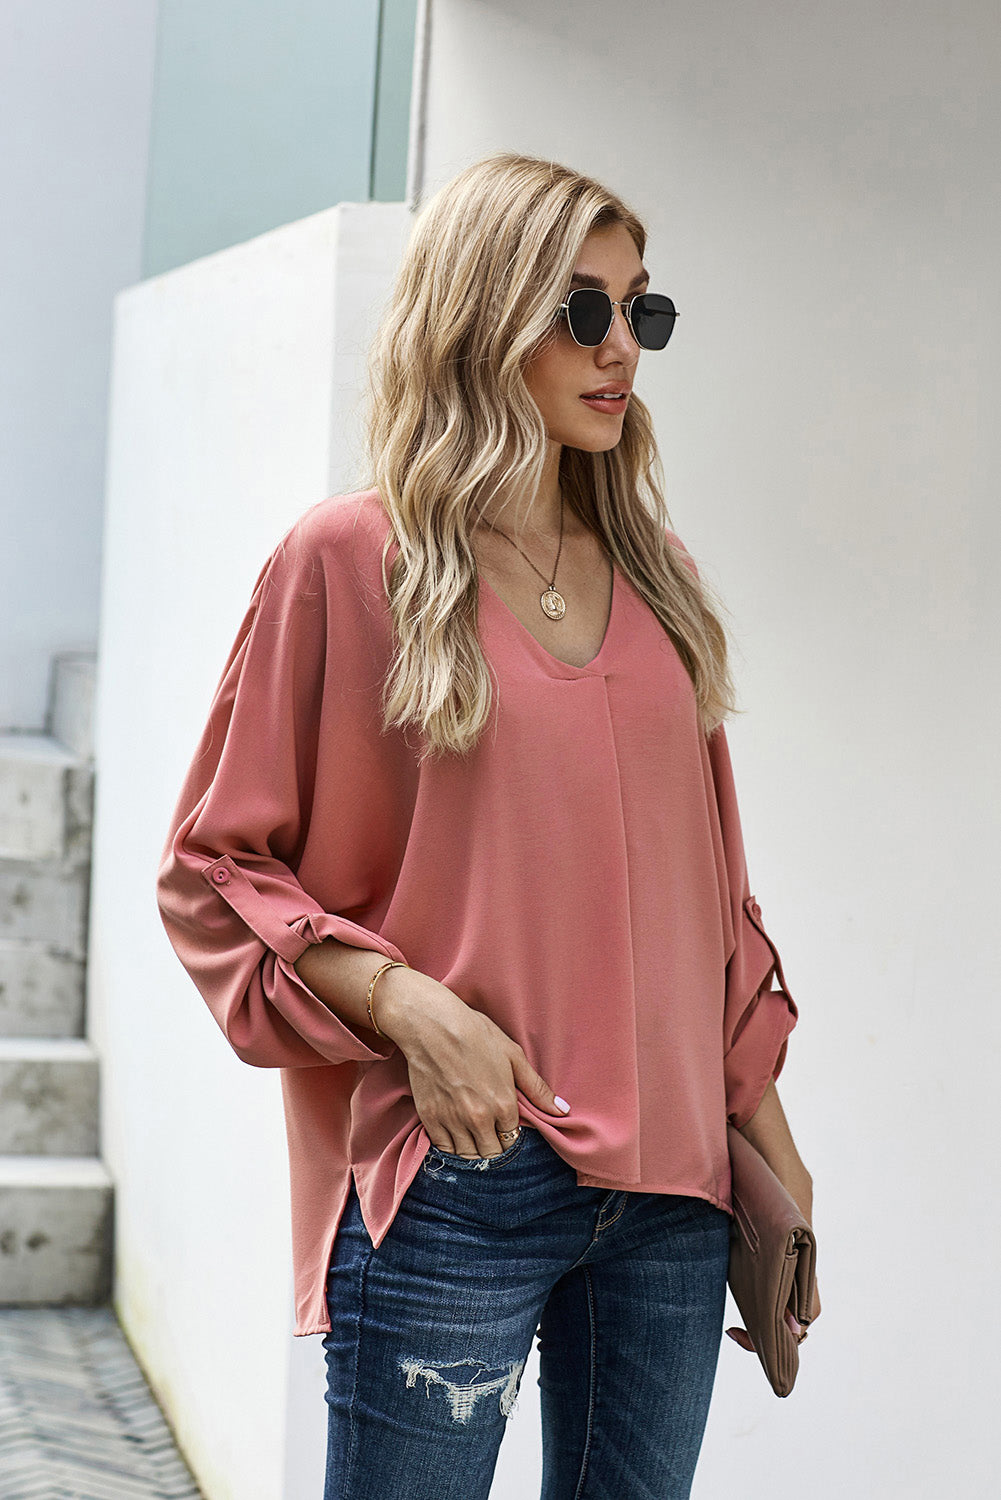 Women's V-Neck Long Sleeve Blouse pink